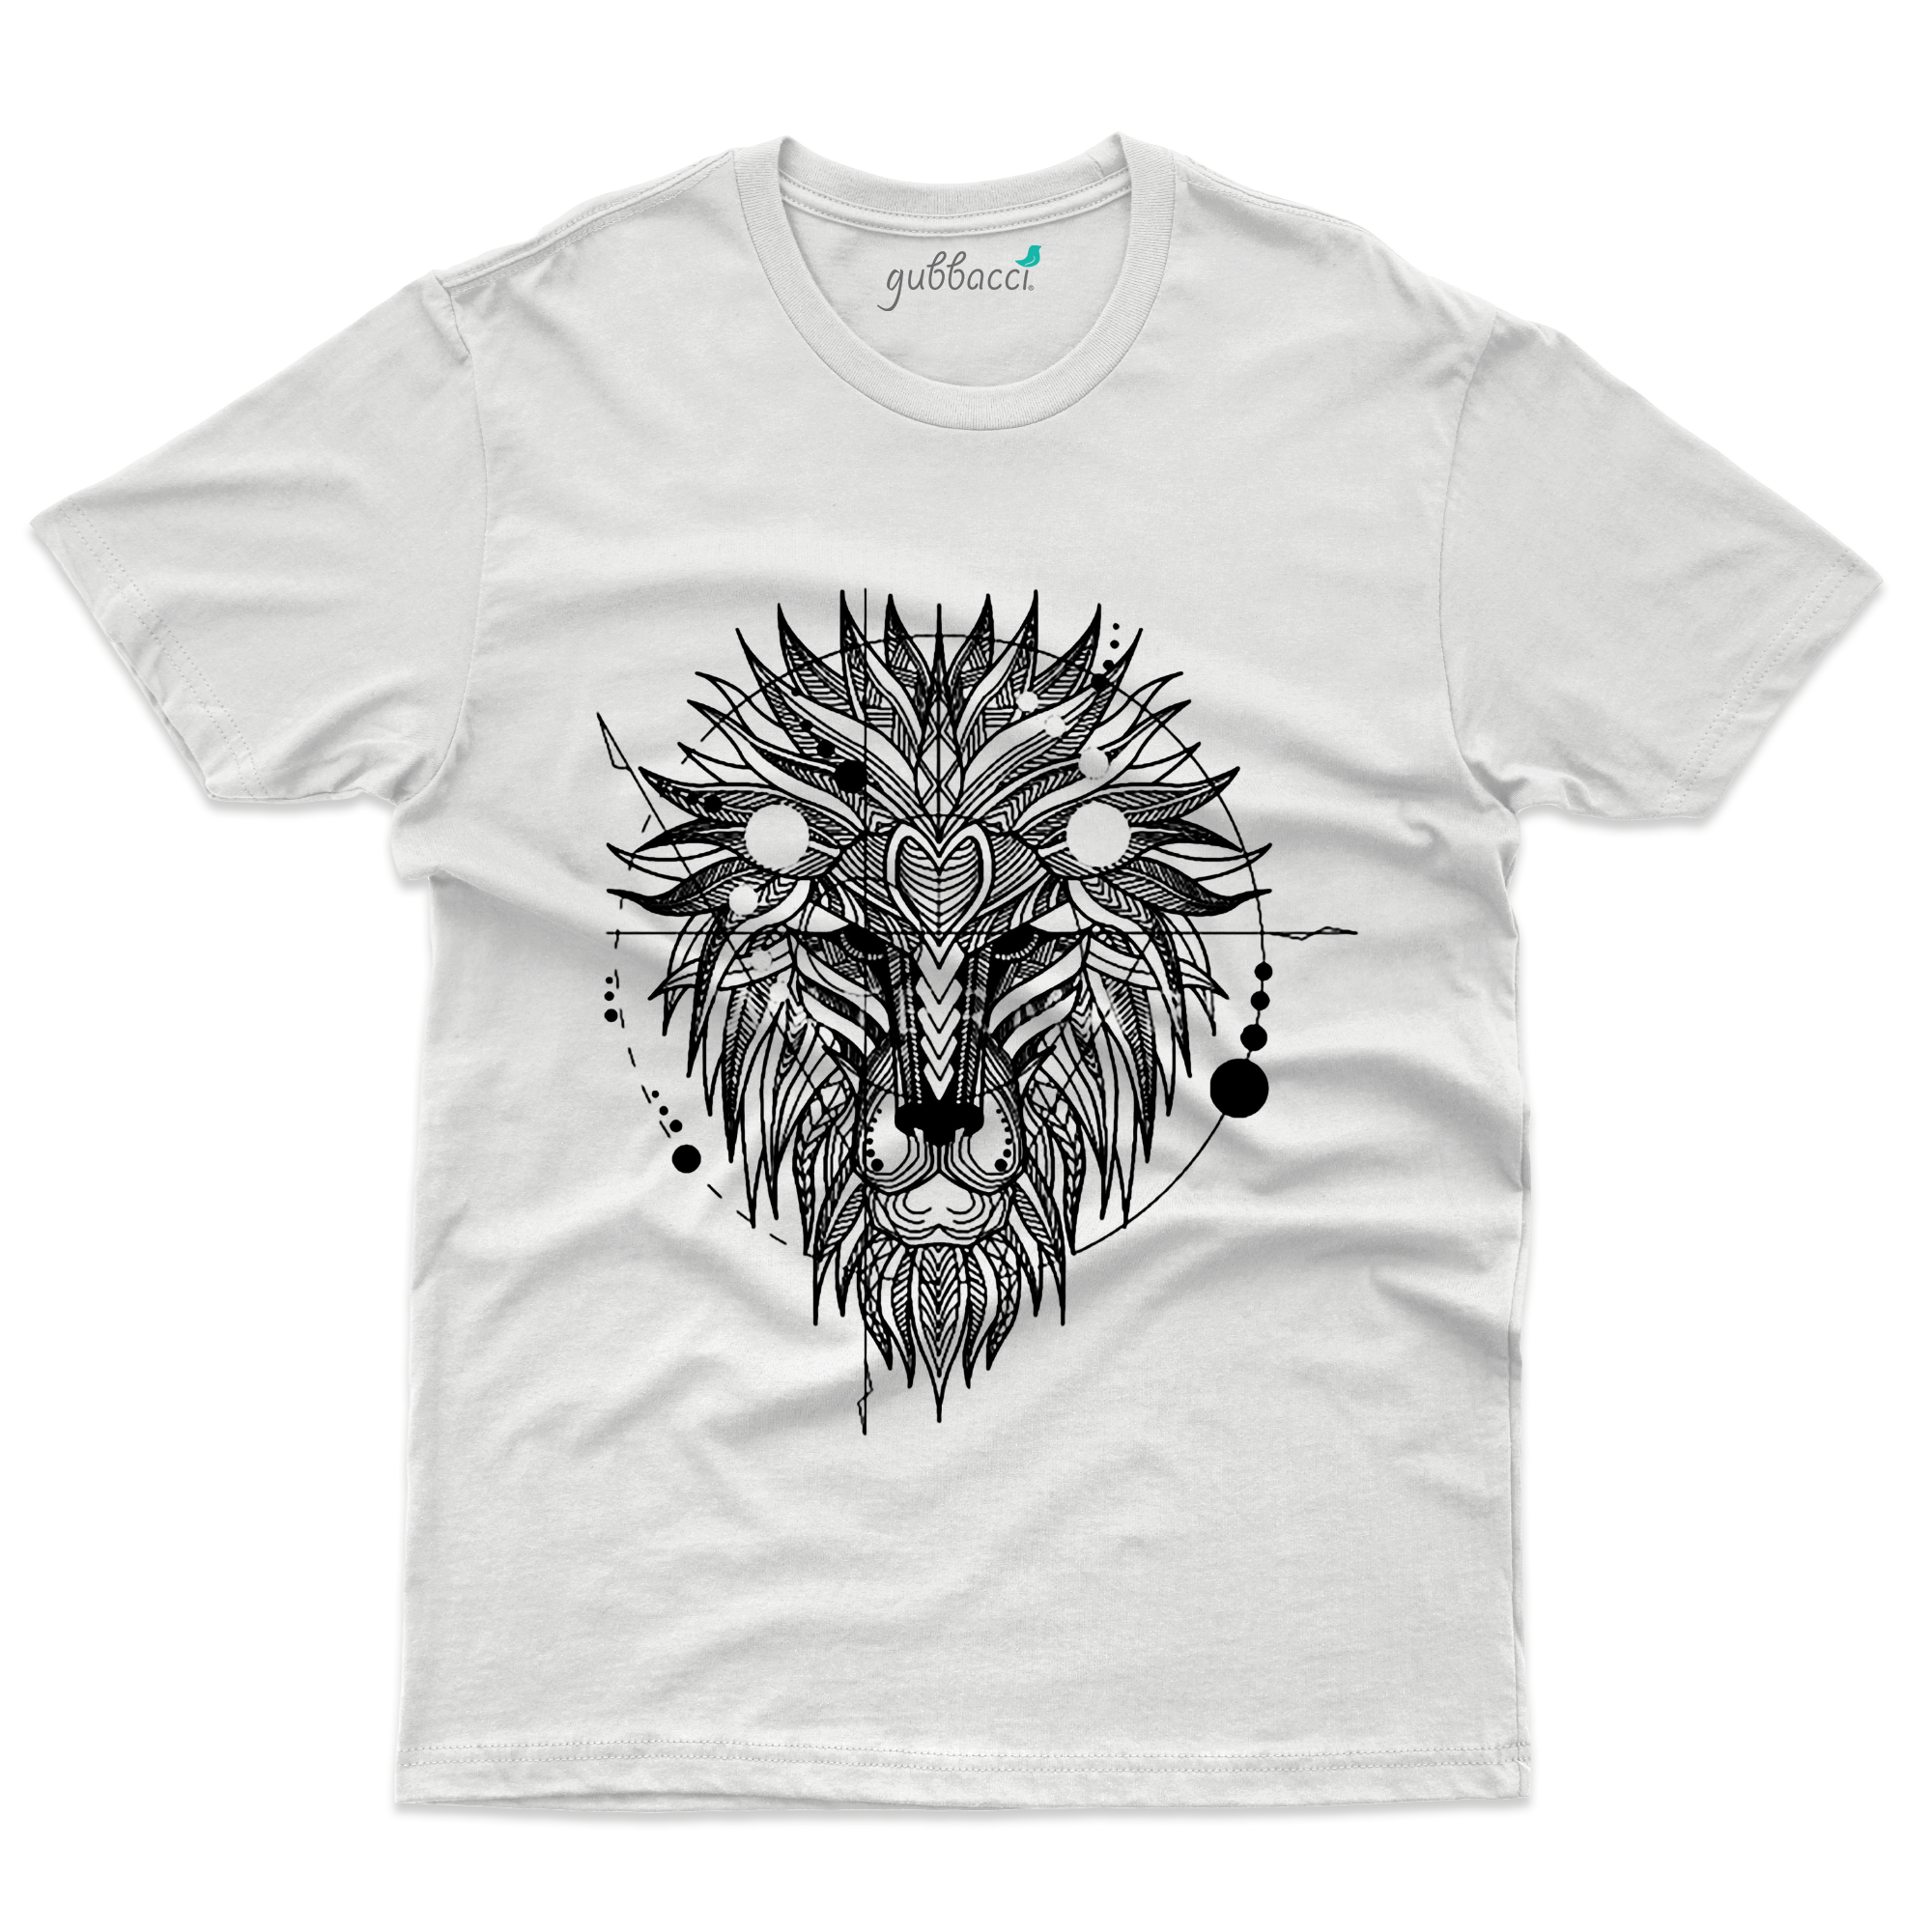 The Lion Whisperer T-shirt